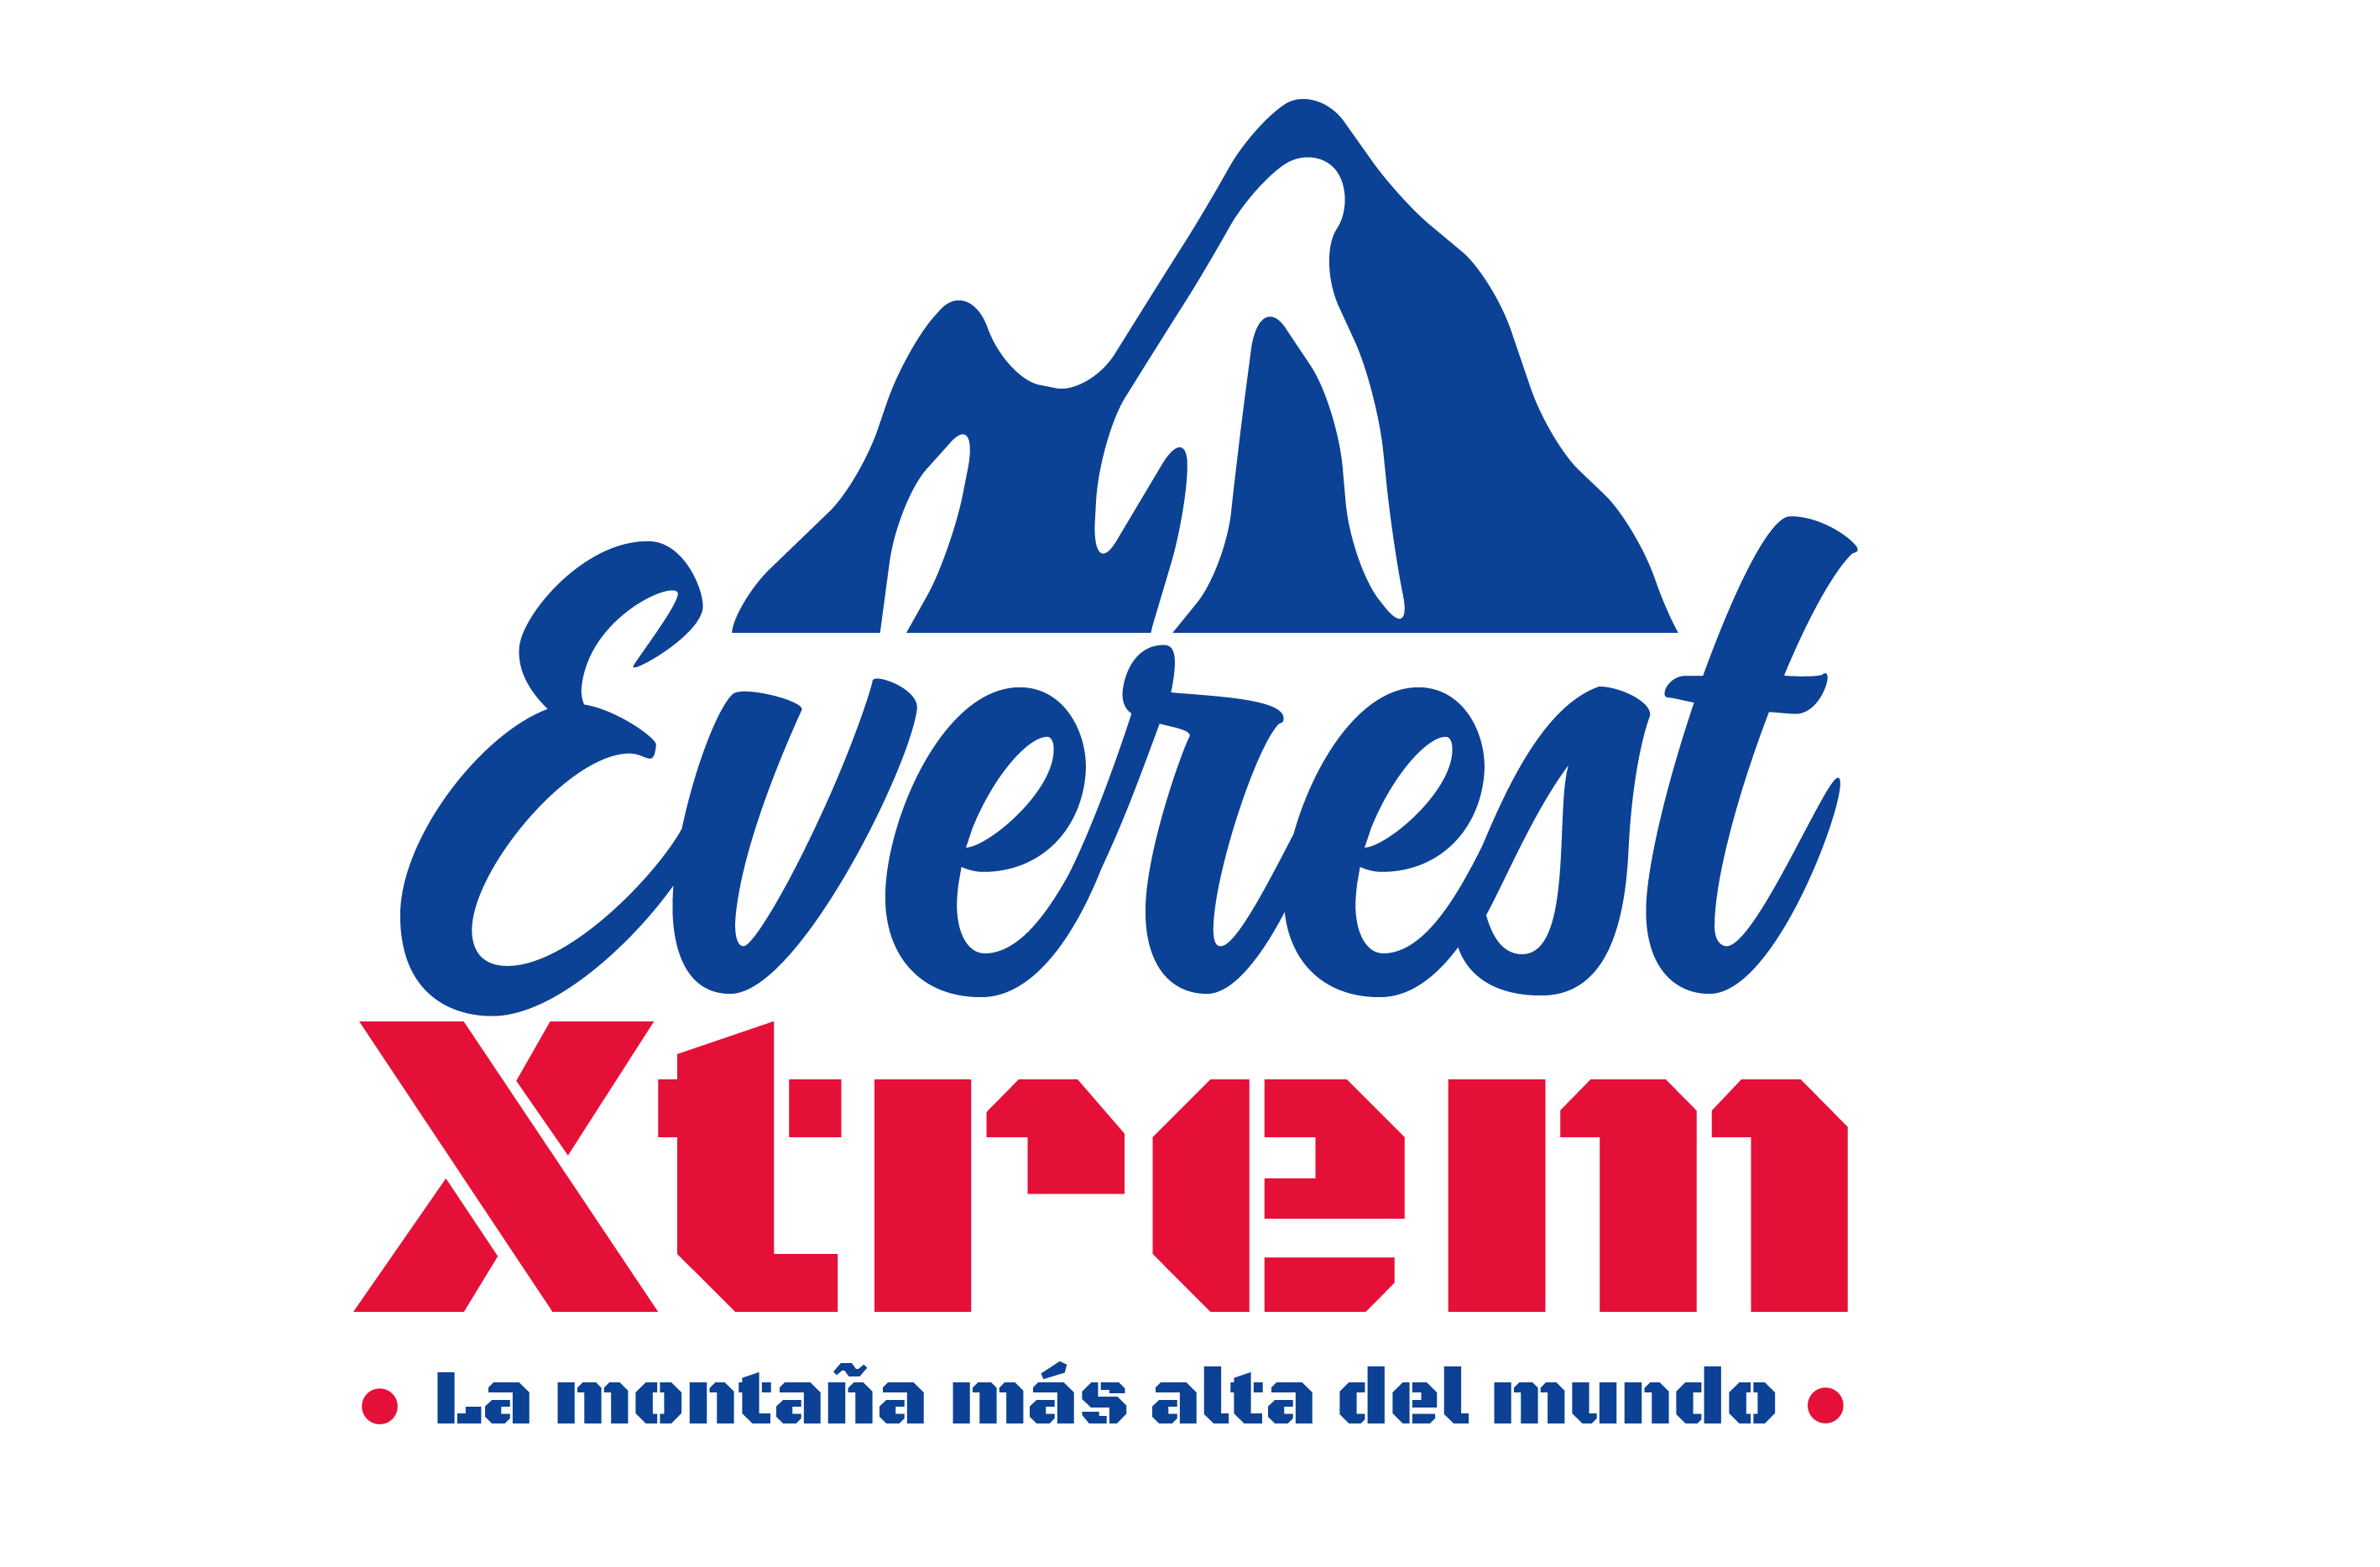 Everest Xtrem diverparke logo